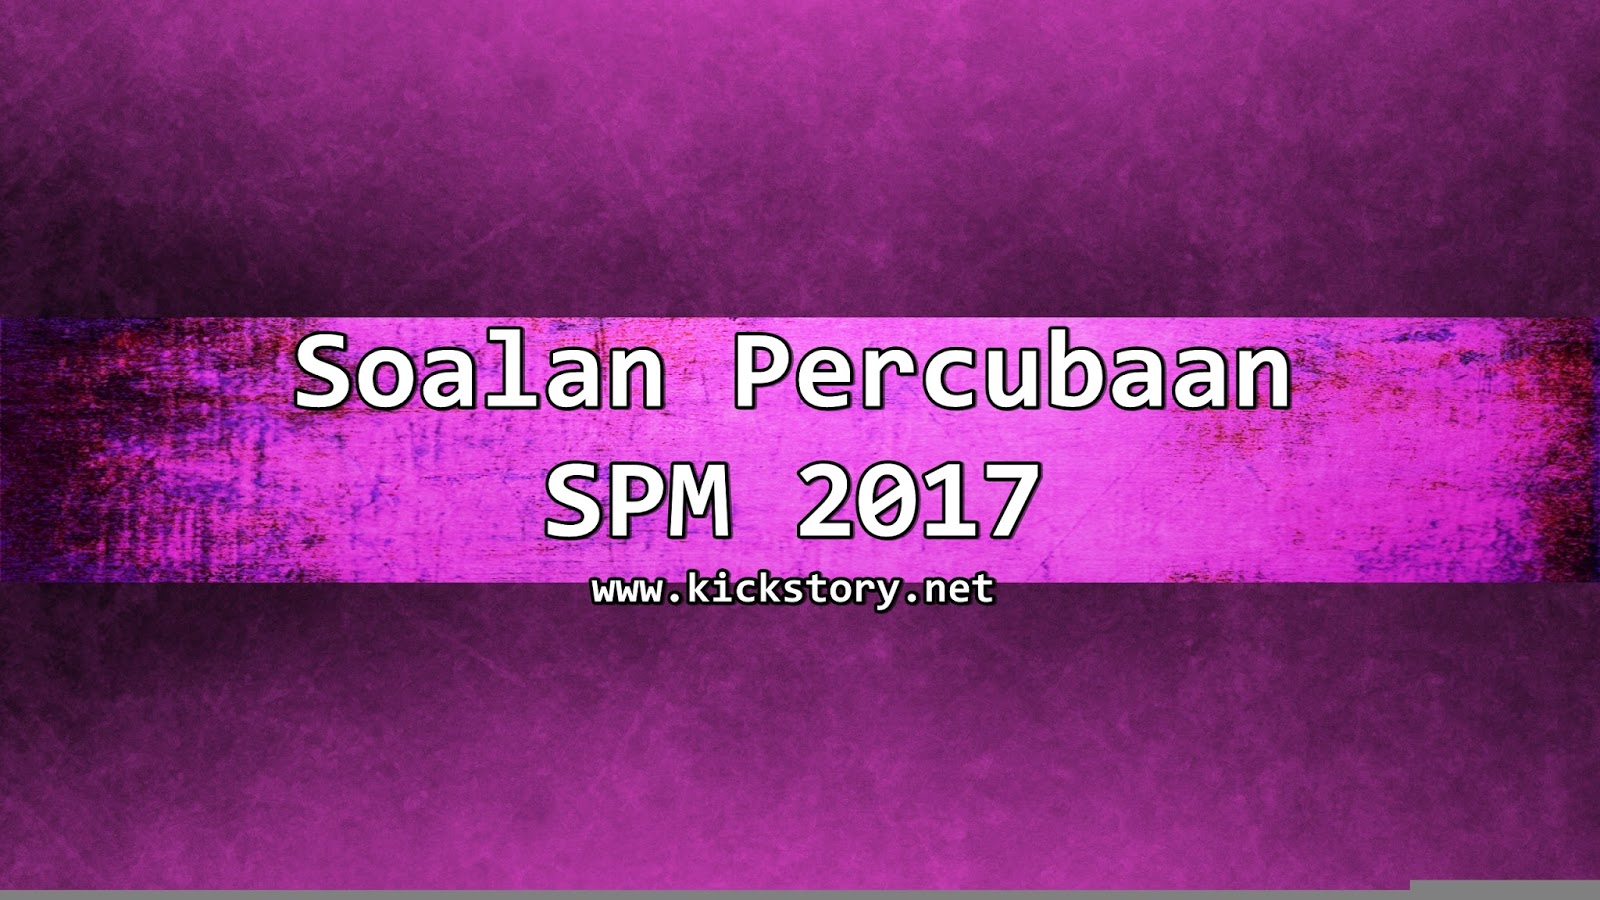 Soalan Percubaan Fizik Spm 2019 Kedah - Terengganu z